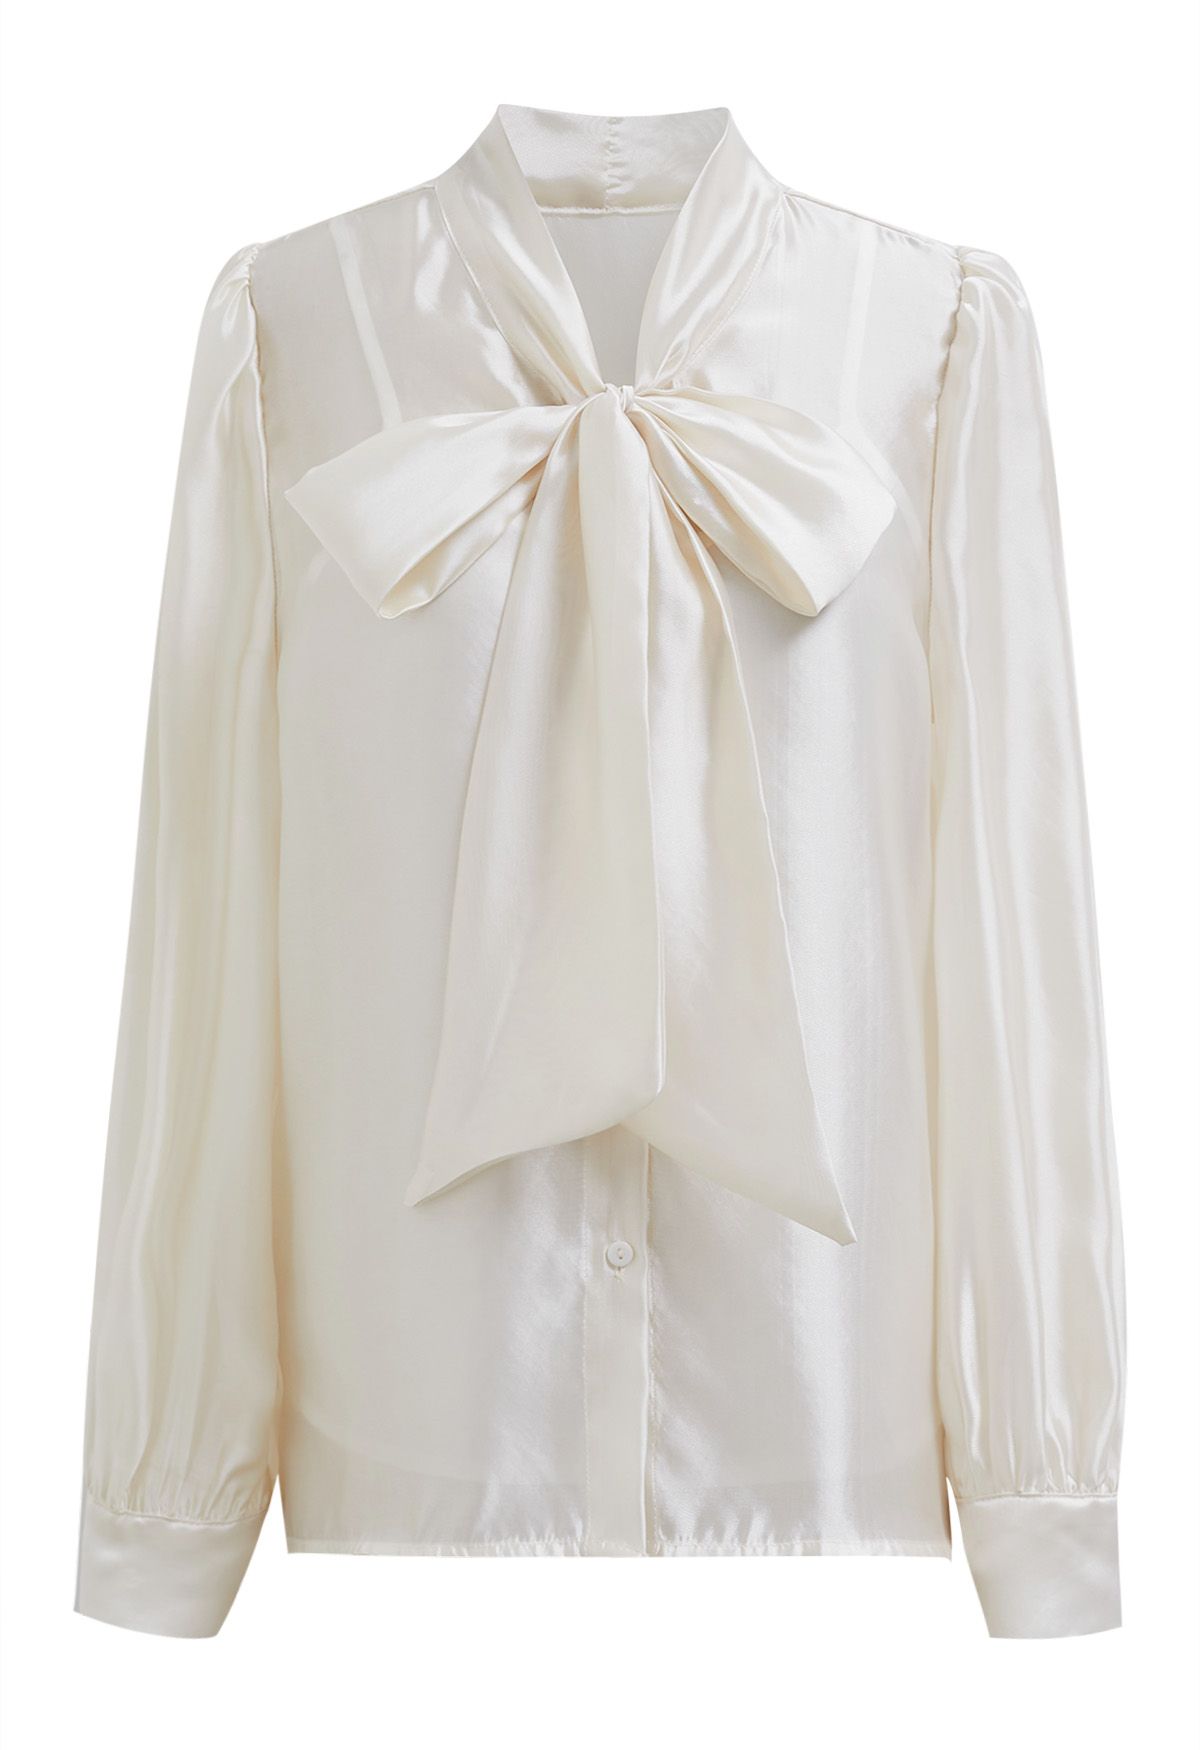 Elegantes, transparentes Hemd mit Schleife und Puffärmeln in Creme